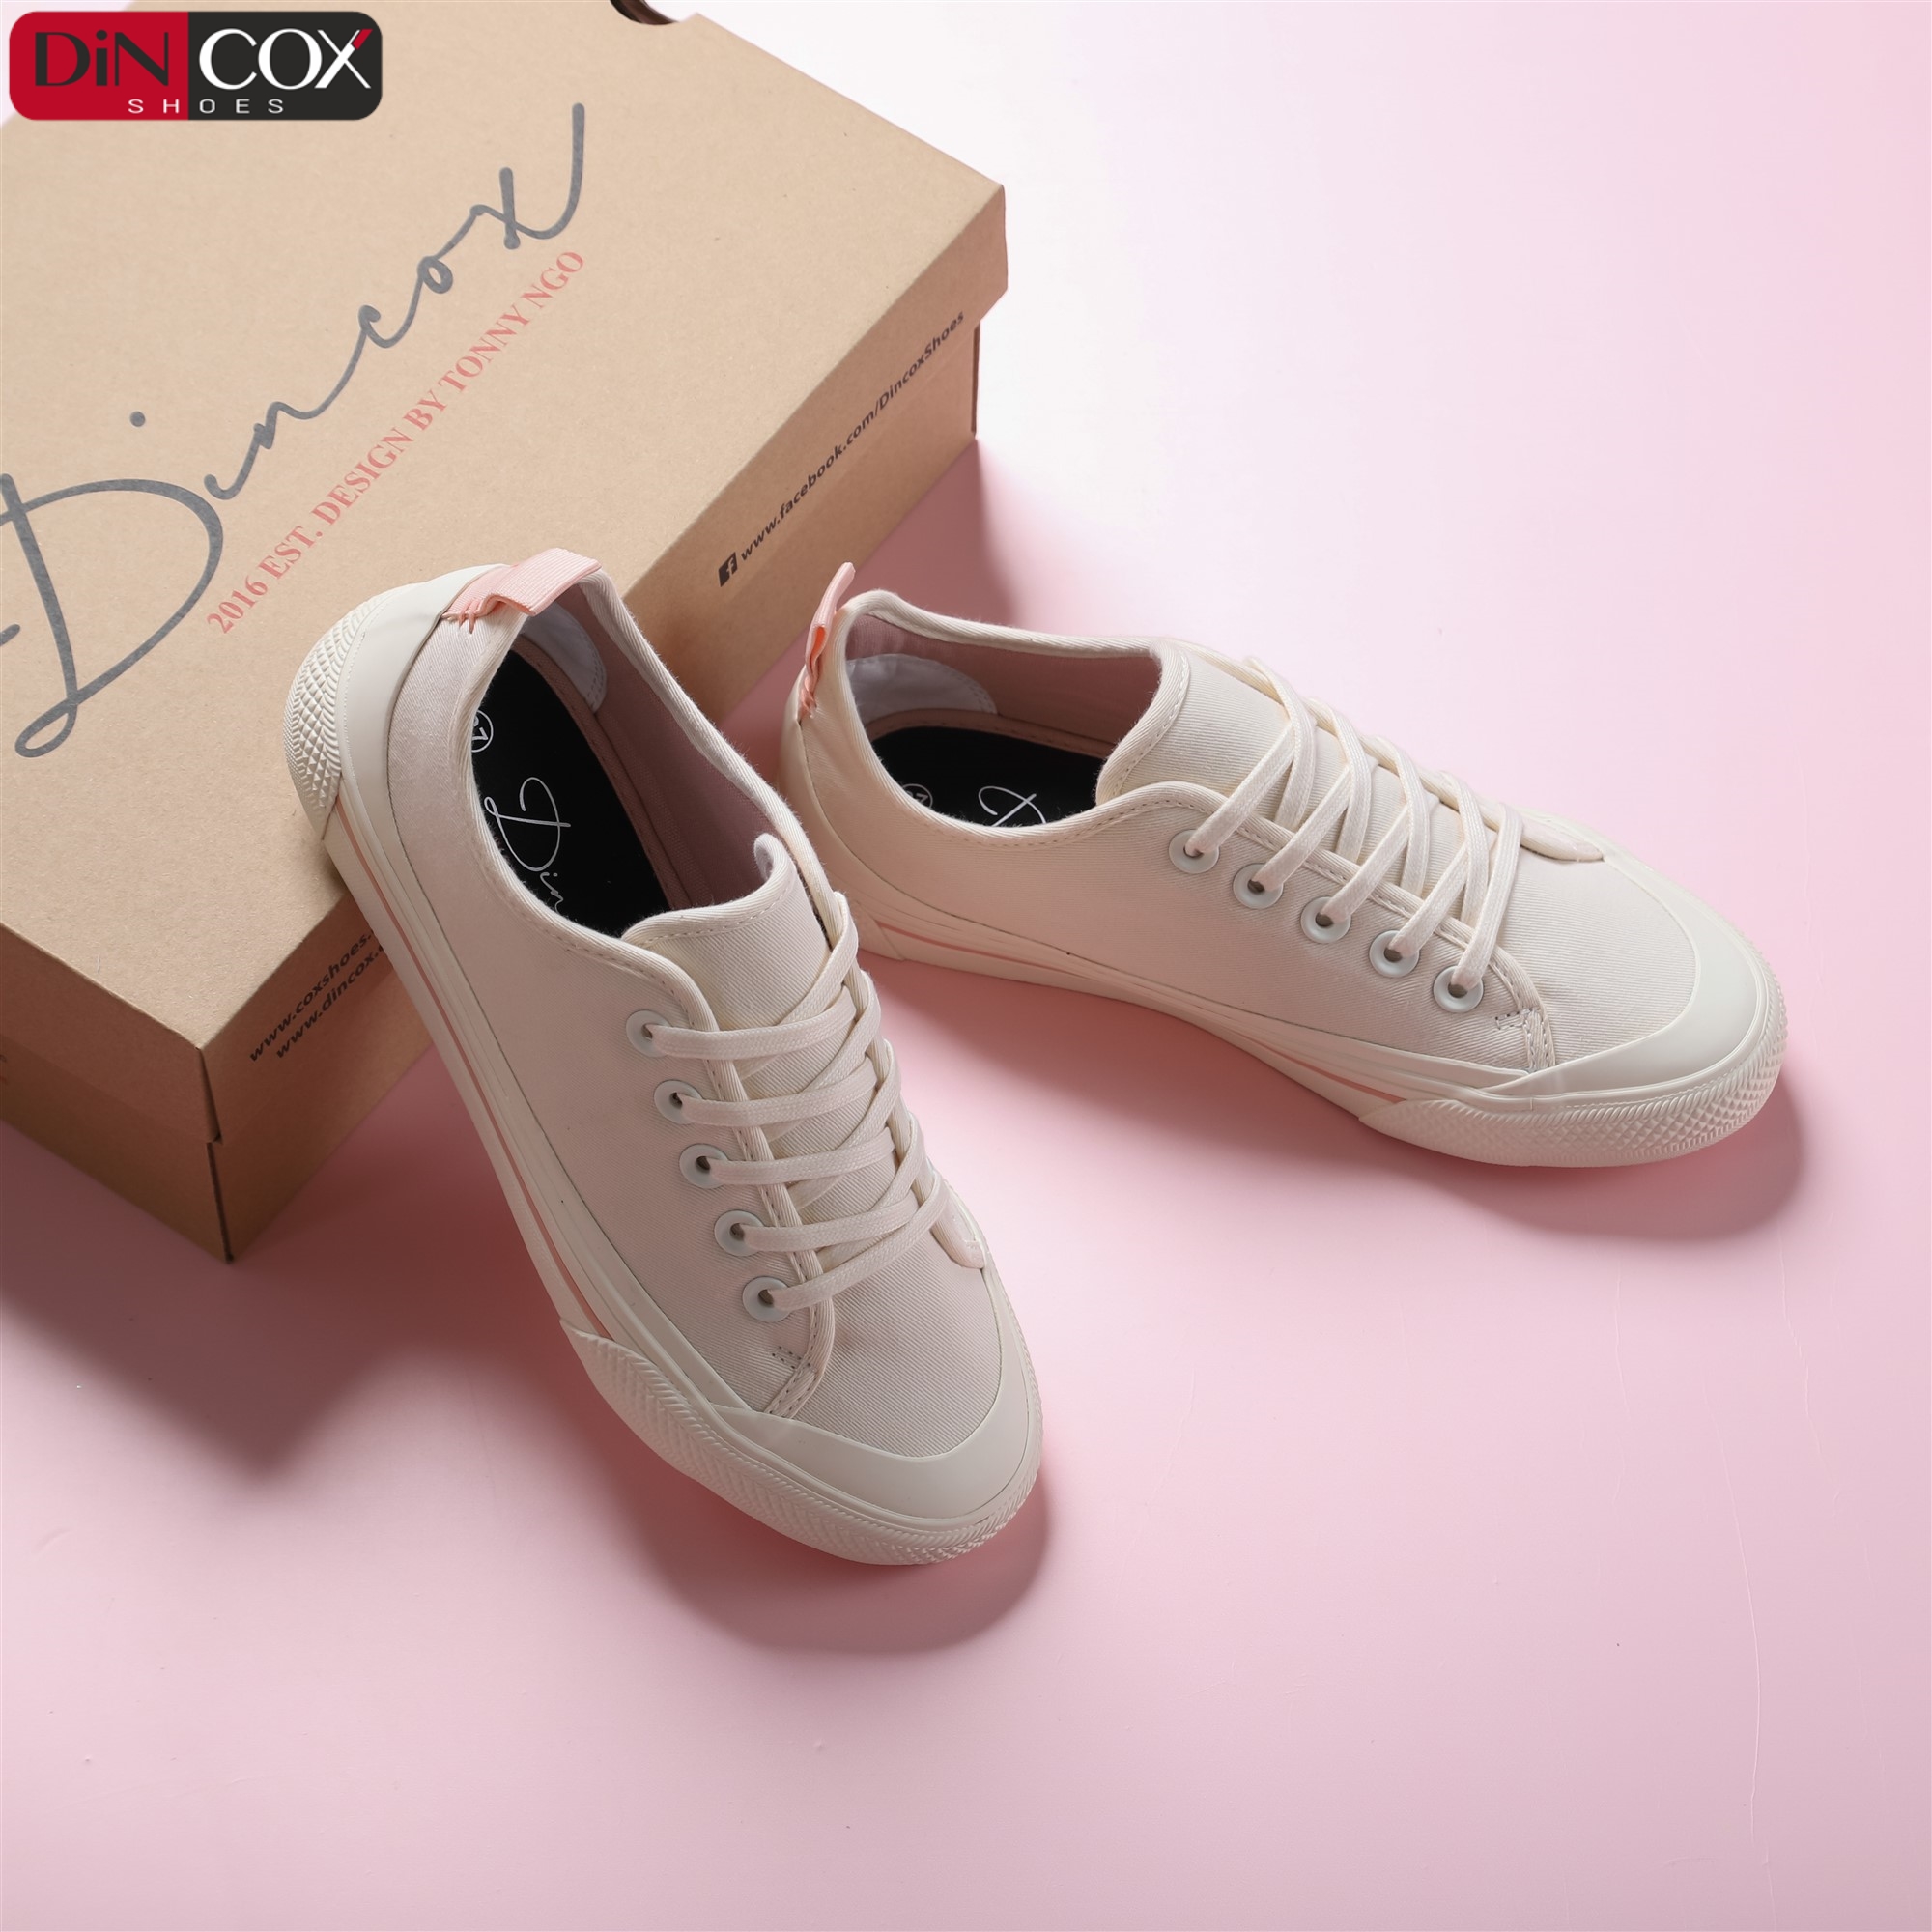 Giày Sneaker Nữ Vải Canvas Dincox C20 Off/White Sang Trọng Tinh Tế